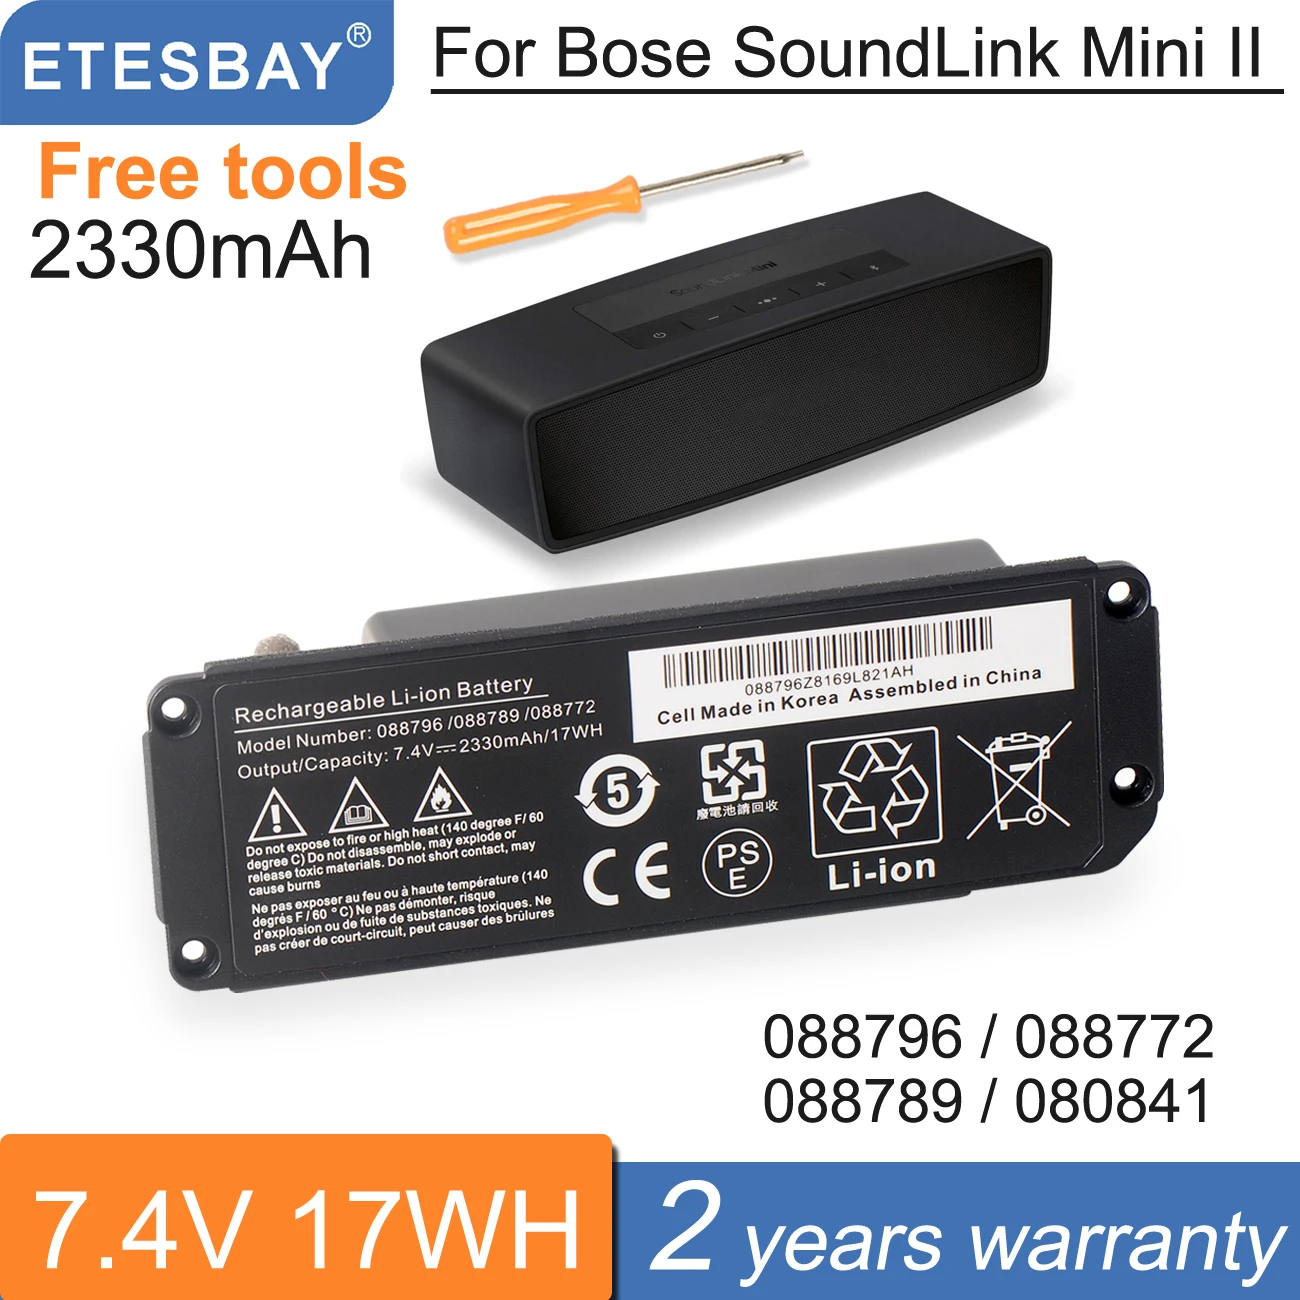 BOSE対応 ボーズ対応 Soundlink 088789 対応 Mini ロワジャパンPSE